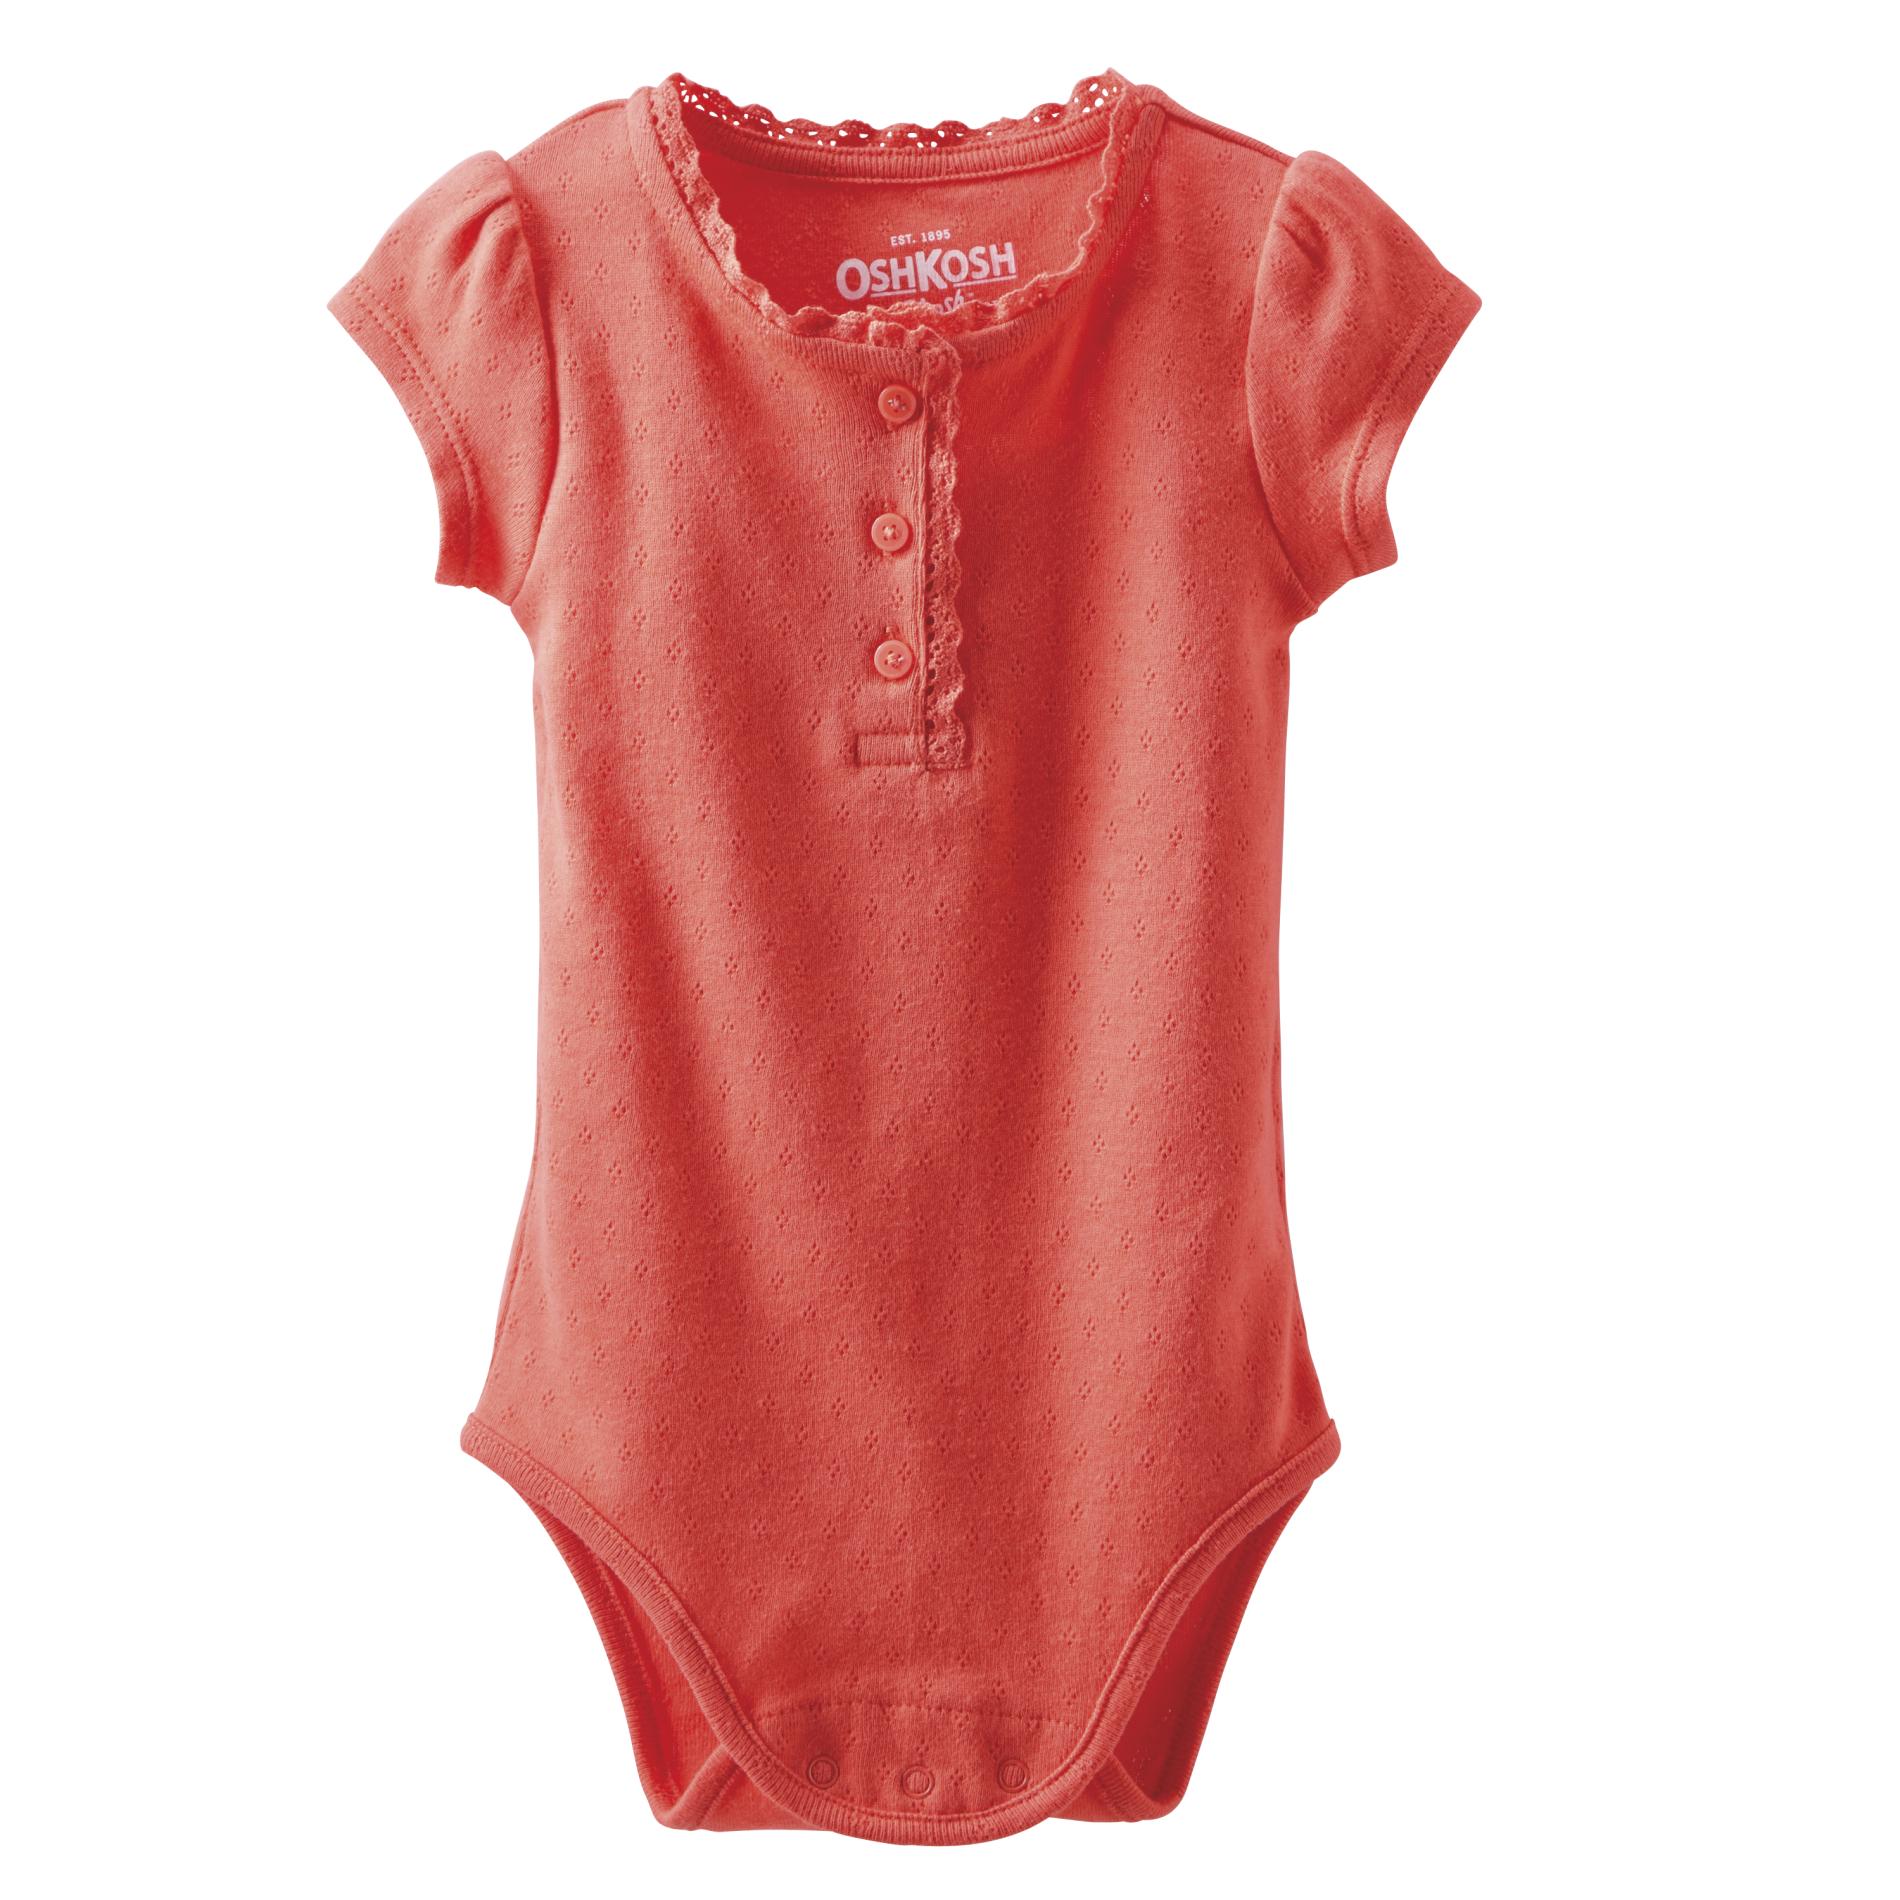 OshKosh Newborn & Infant Girl's Bodysuit